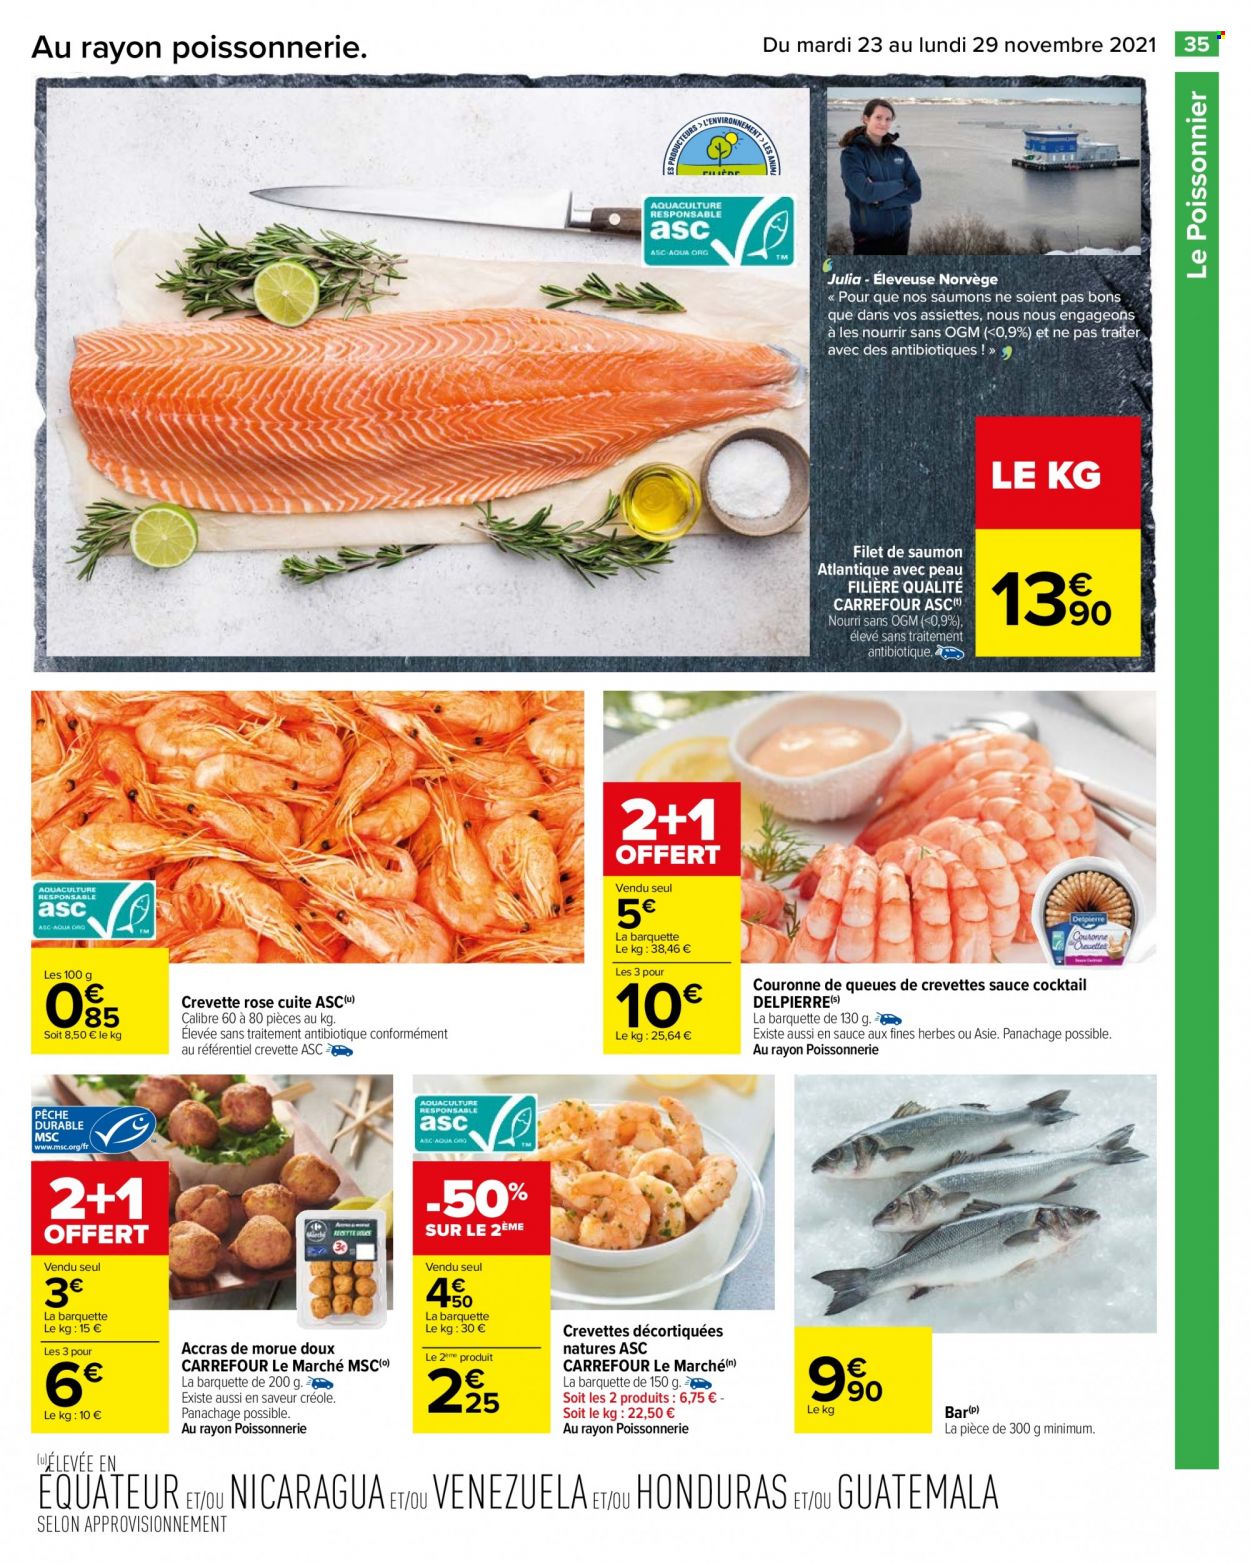 thumbnail - Catalogue Carrefour Hypermarchés - 23/11/2021 - 29/11/2021 - Produits soldés - saumon, crevettes, crevette rosé, pavés de saumon, accras de morue. Page 35.